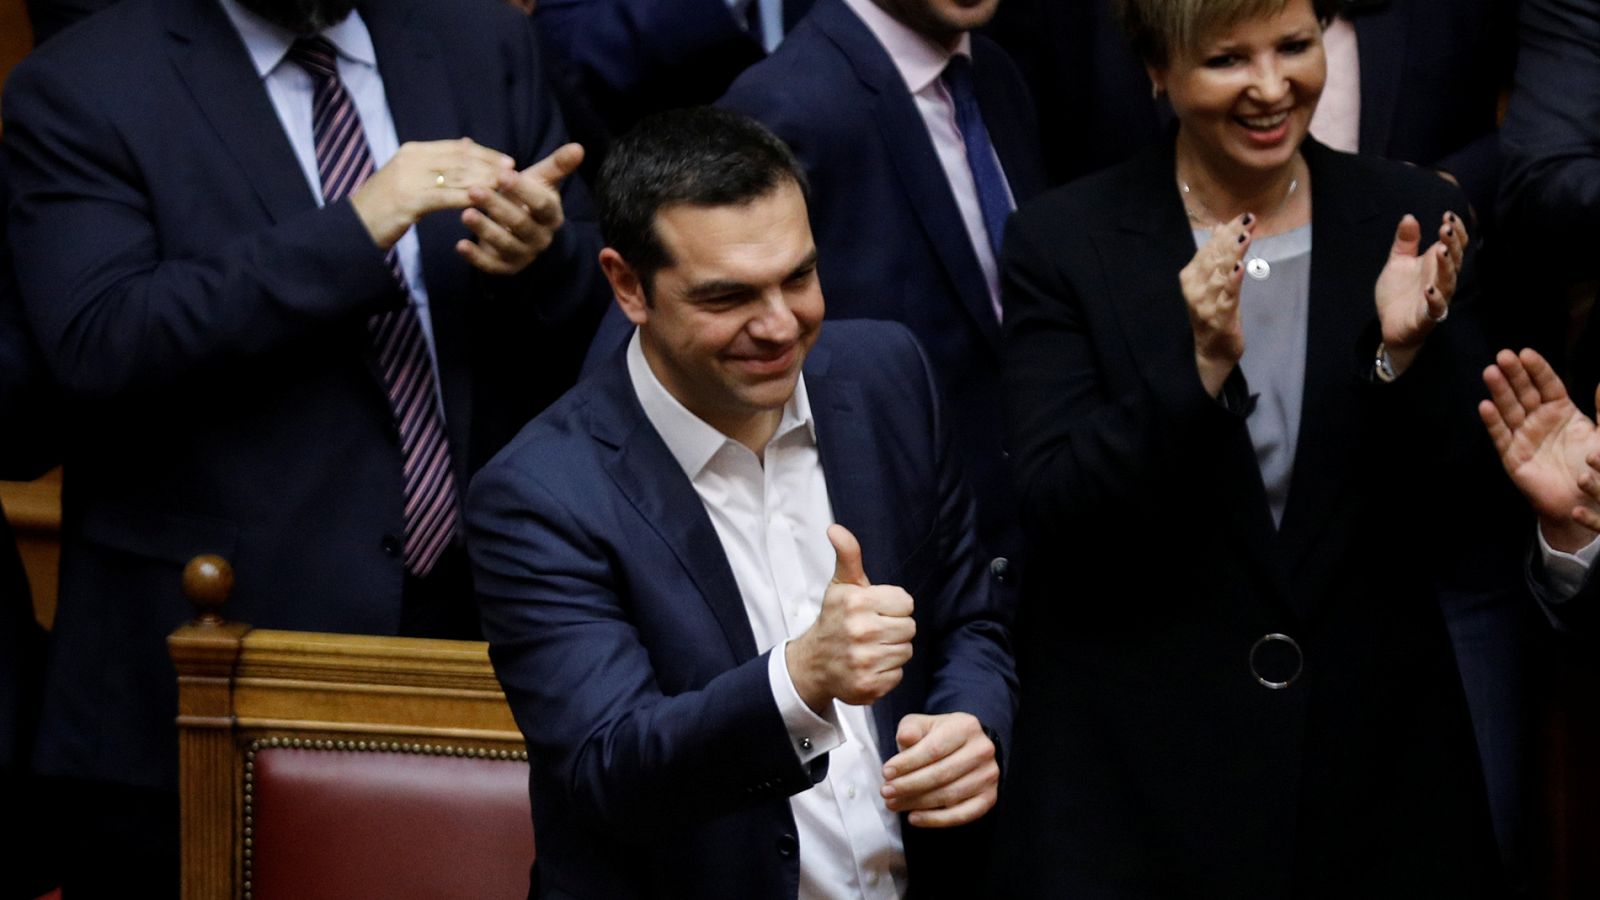 El primer ministro griego Alexis Tsipras hace la señal de victoria tras superar la moción de censura